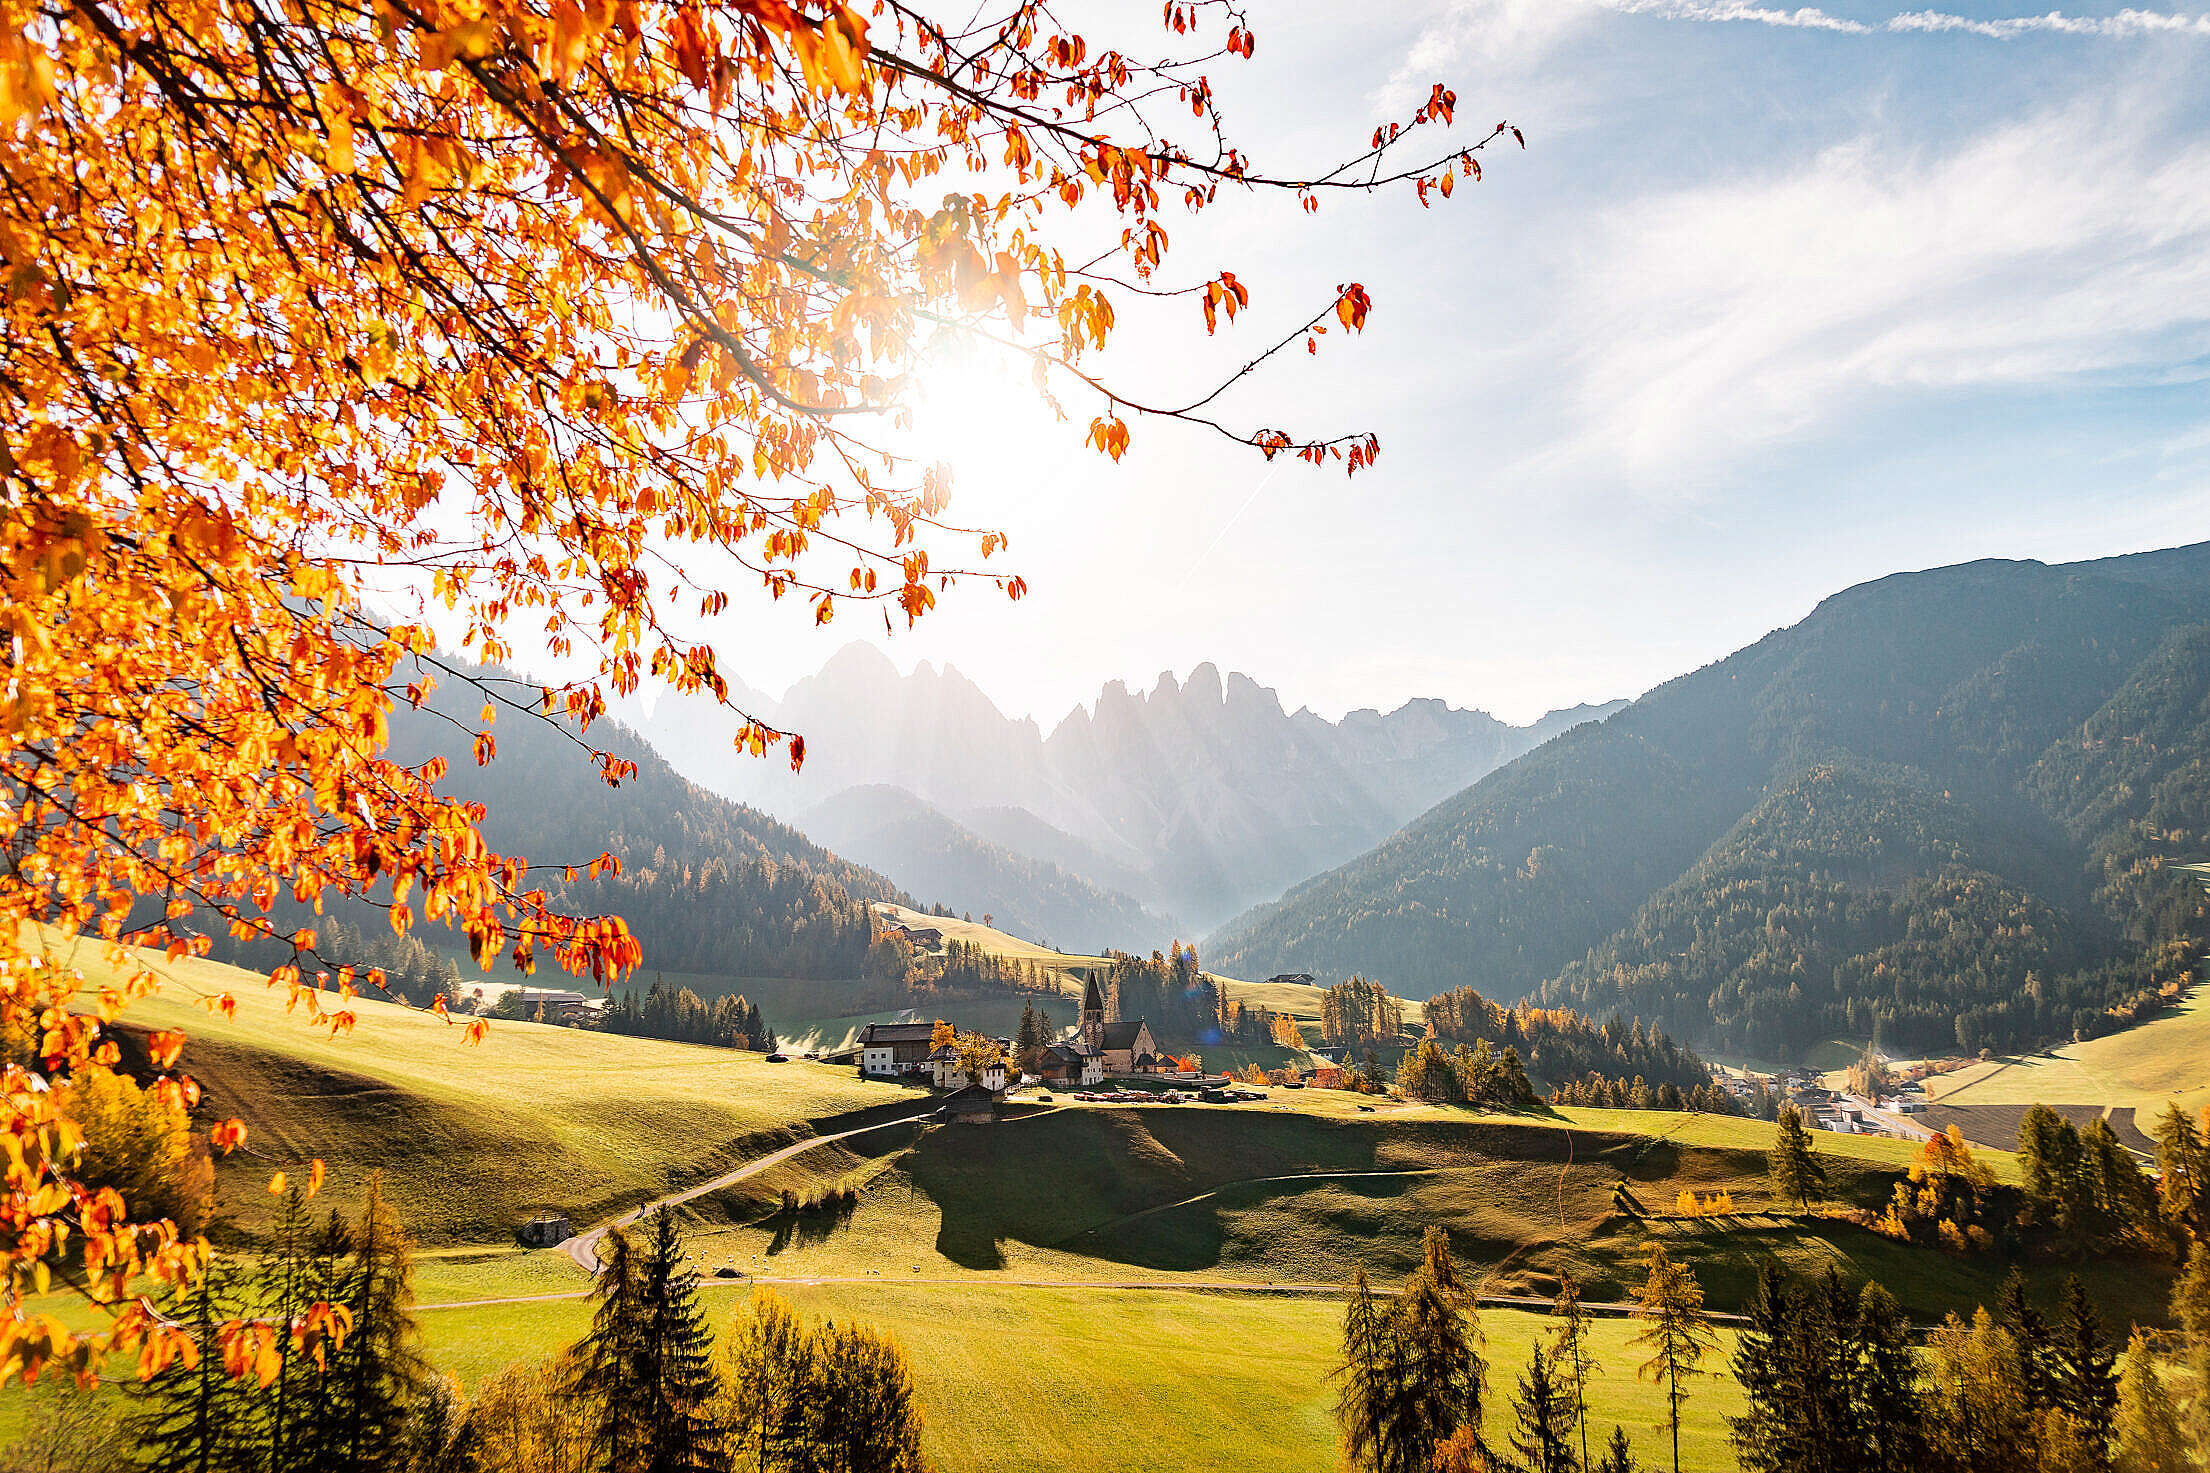 Spectacular Autumn Mountain View, Dolomites Italy Free Stock Photo |  picjumbo